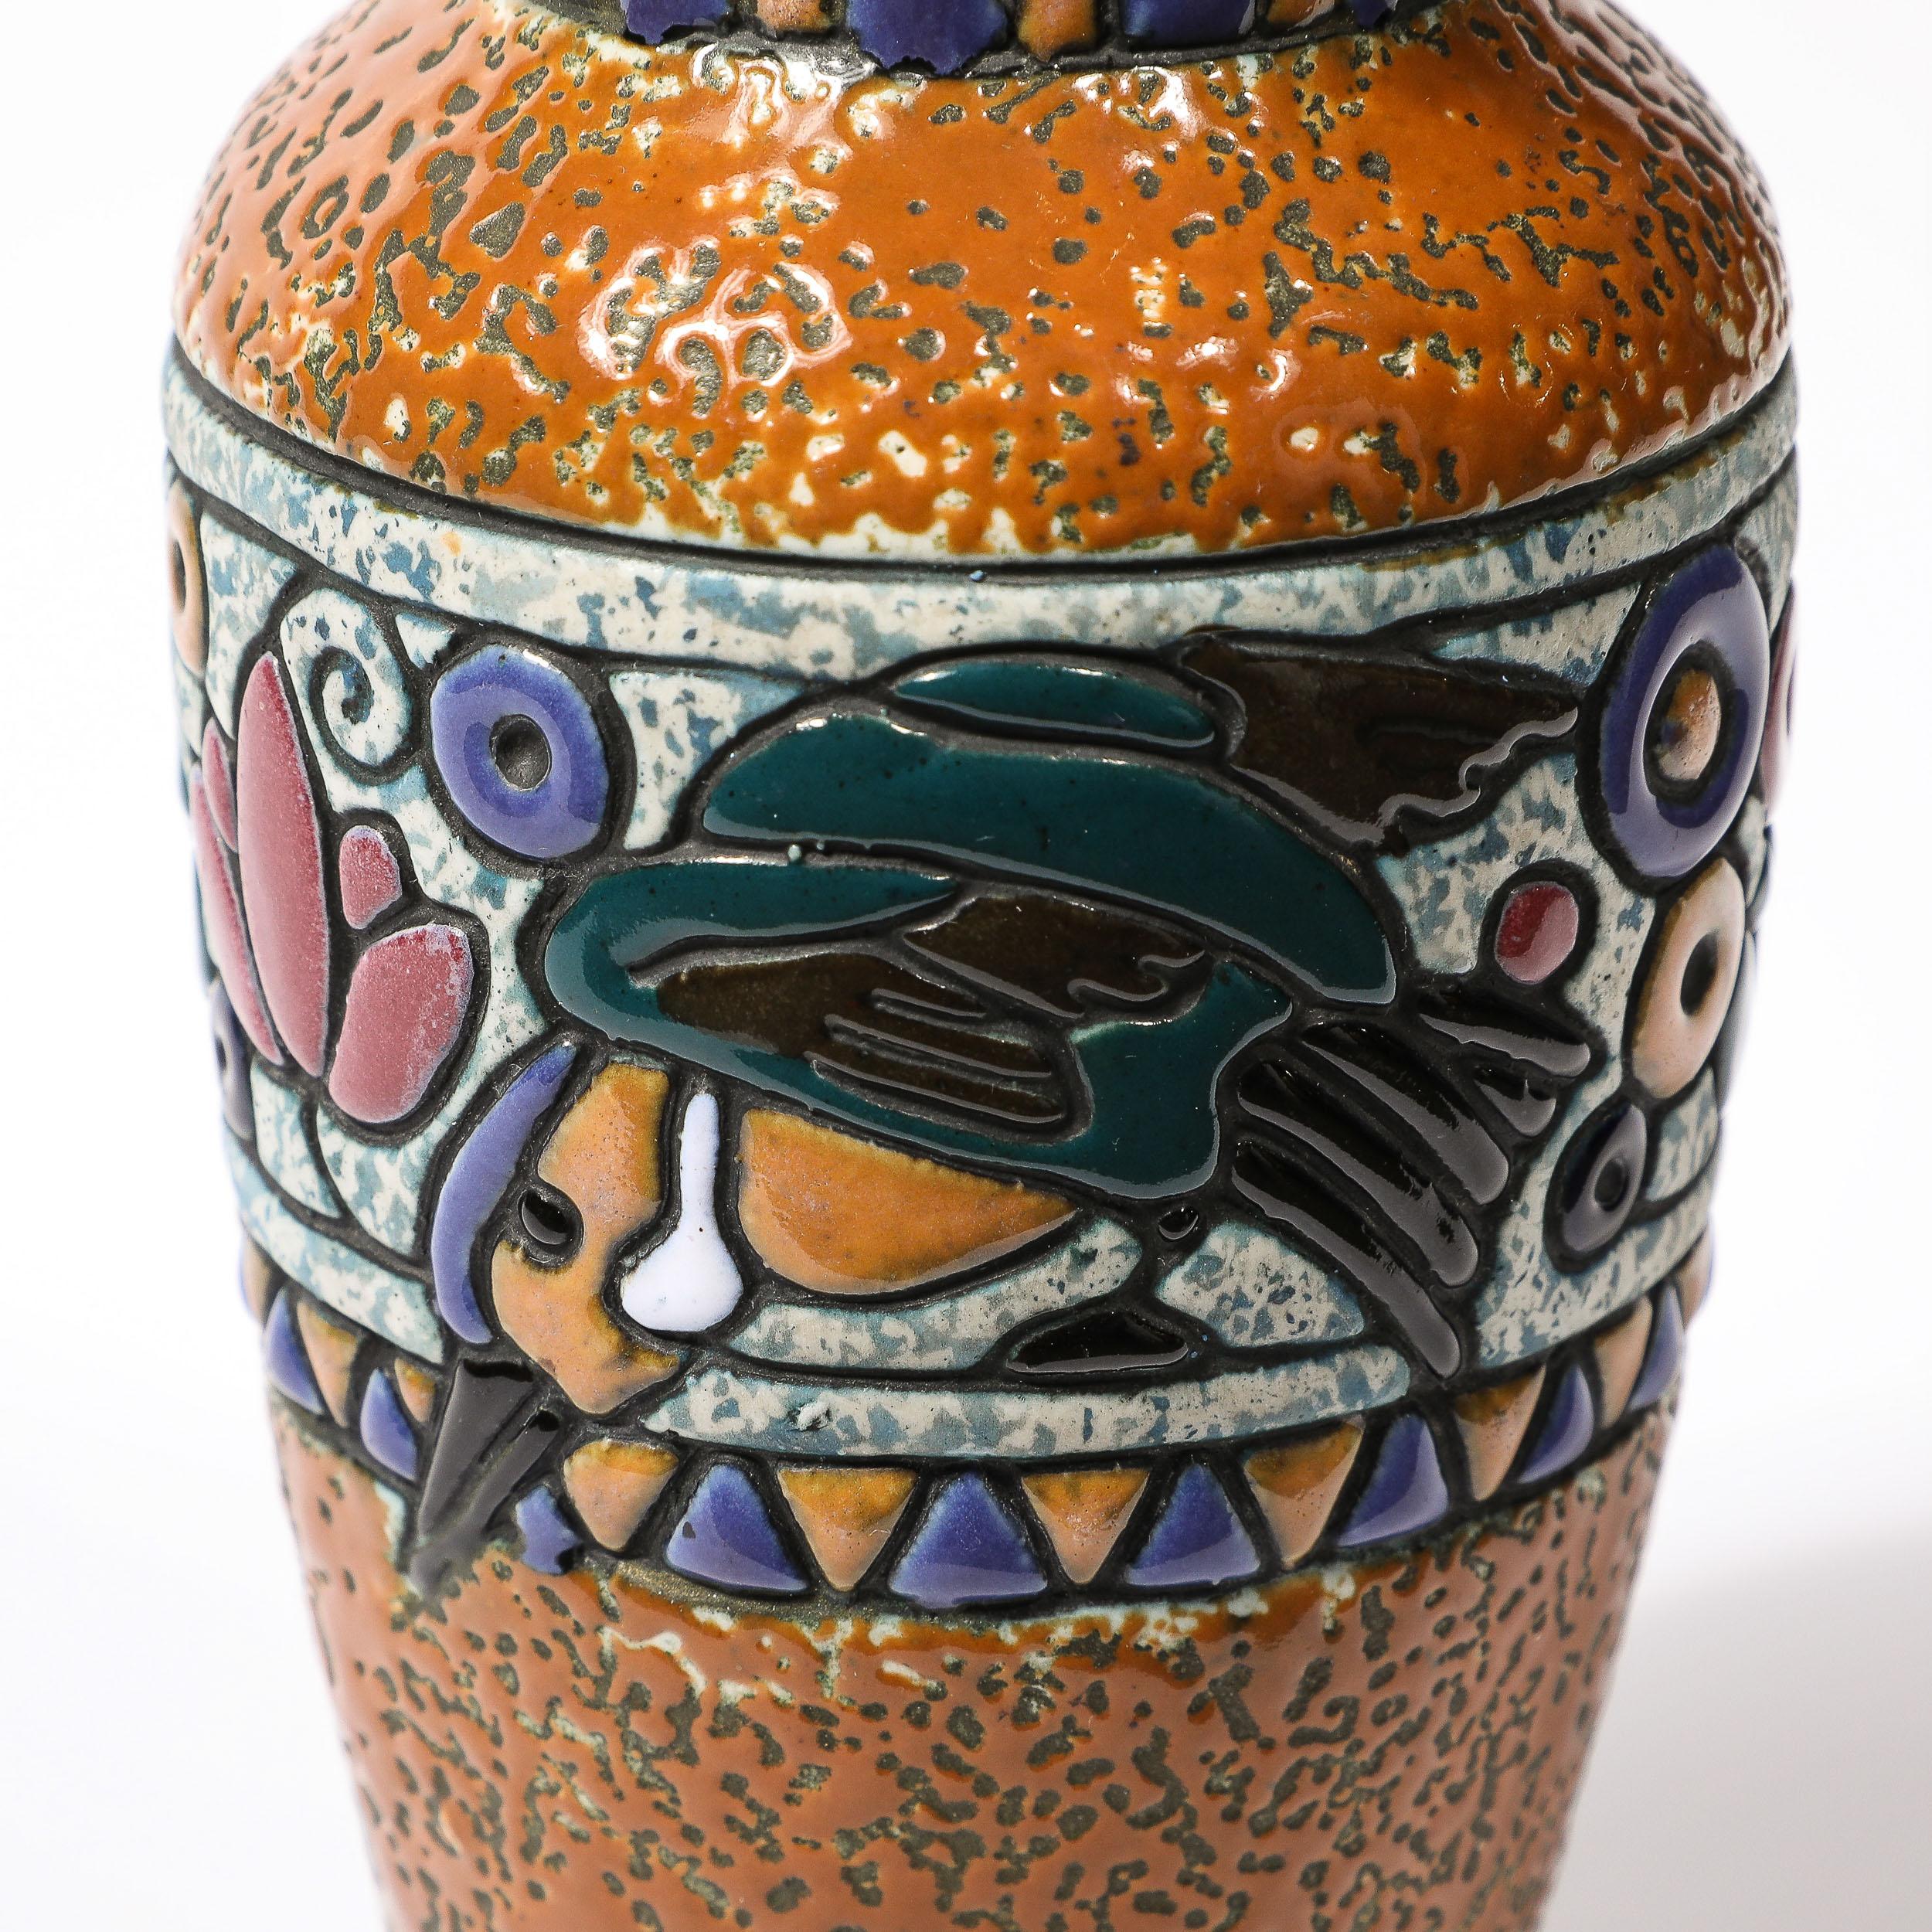 Jarrón de Cerámica Art Decó con Colibrí en Vidriado Lineal Multicolor firmado Amphora 1